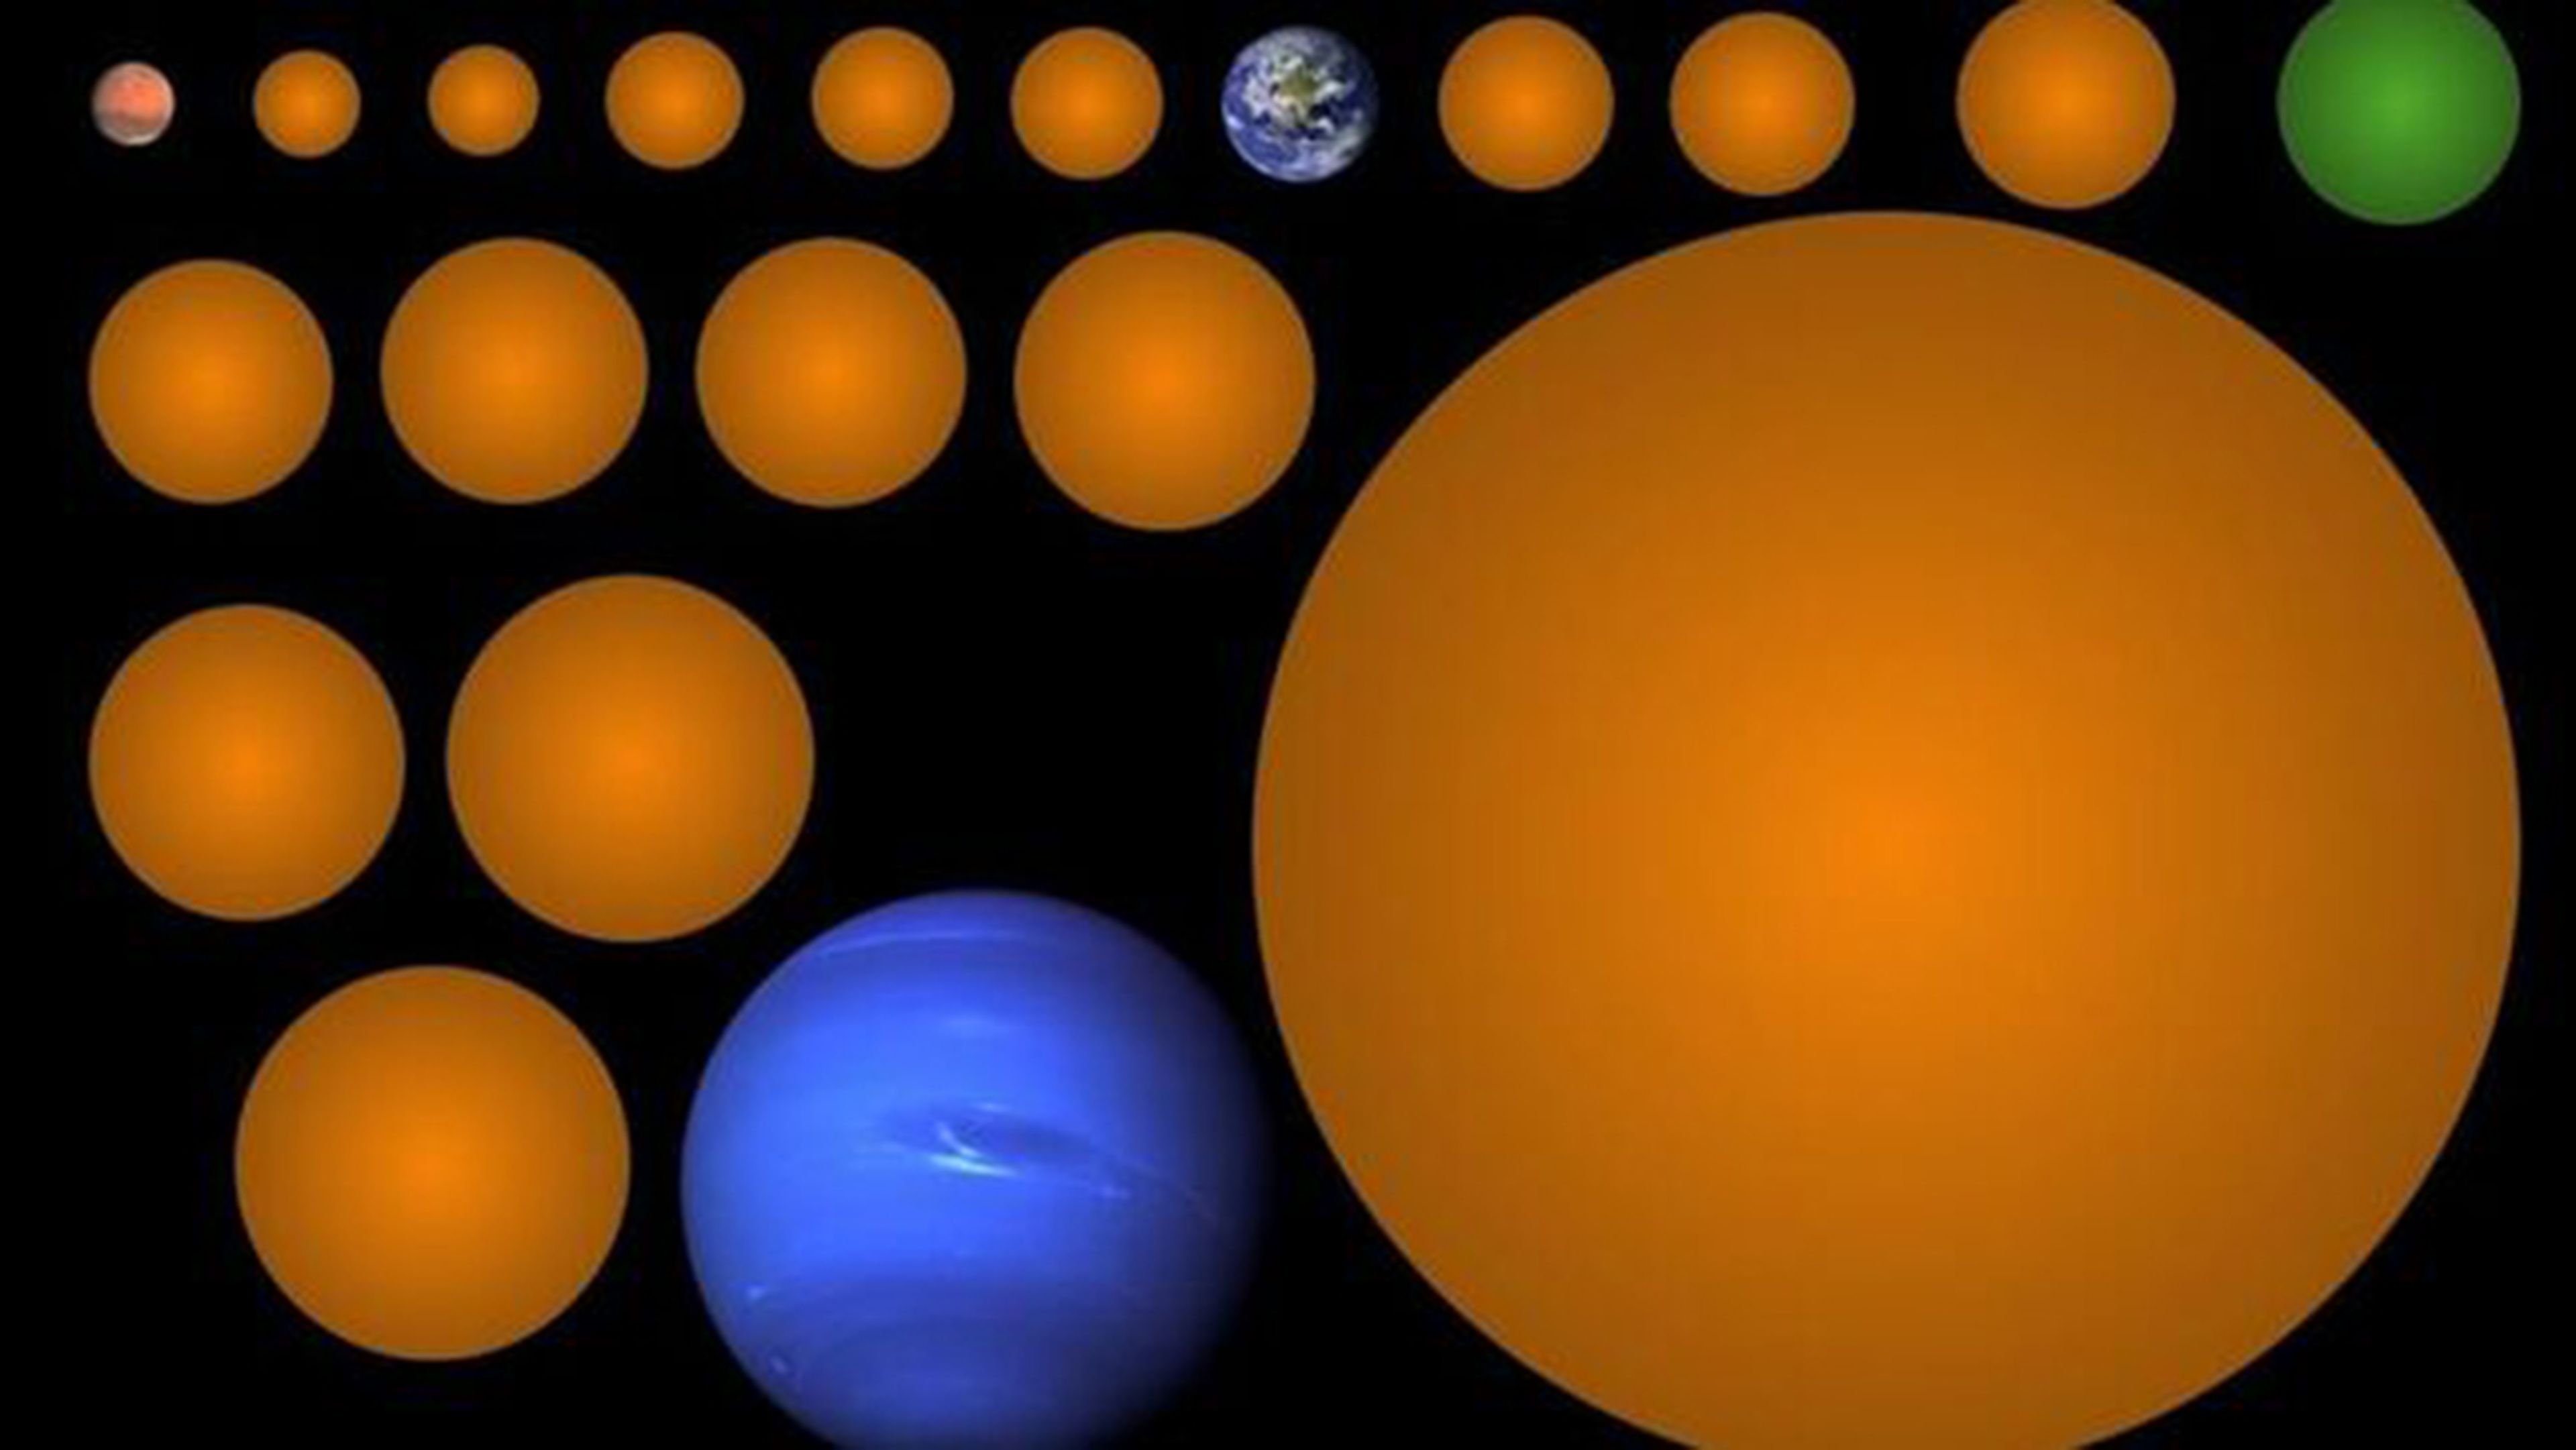 Imagen realizada por la estudiante Kunimoto de los planetas descubiertos en comparación con la Tierra.